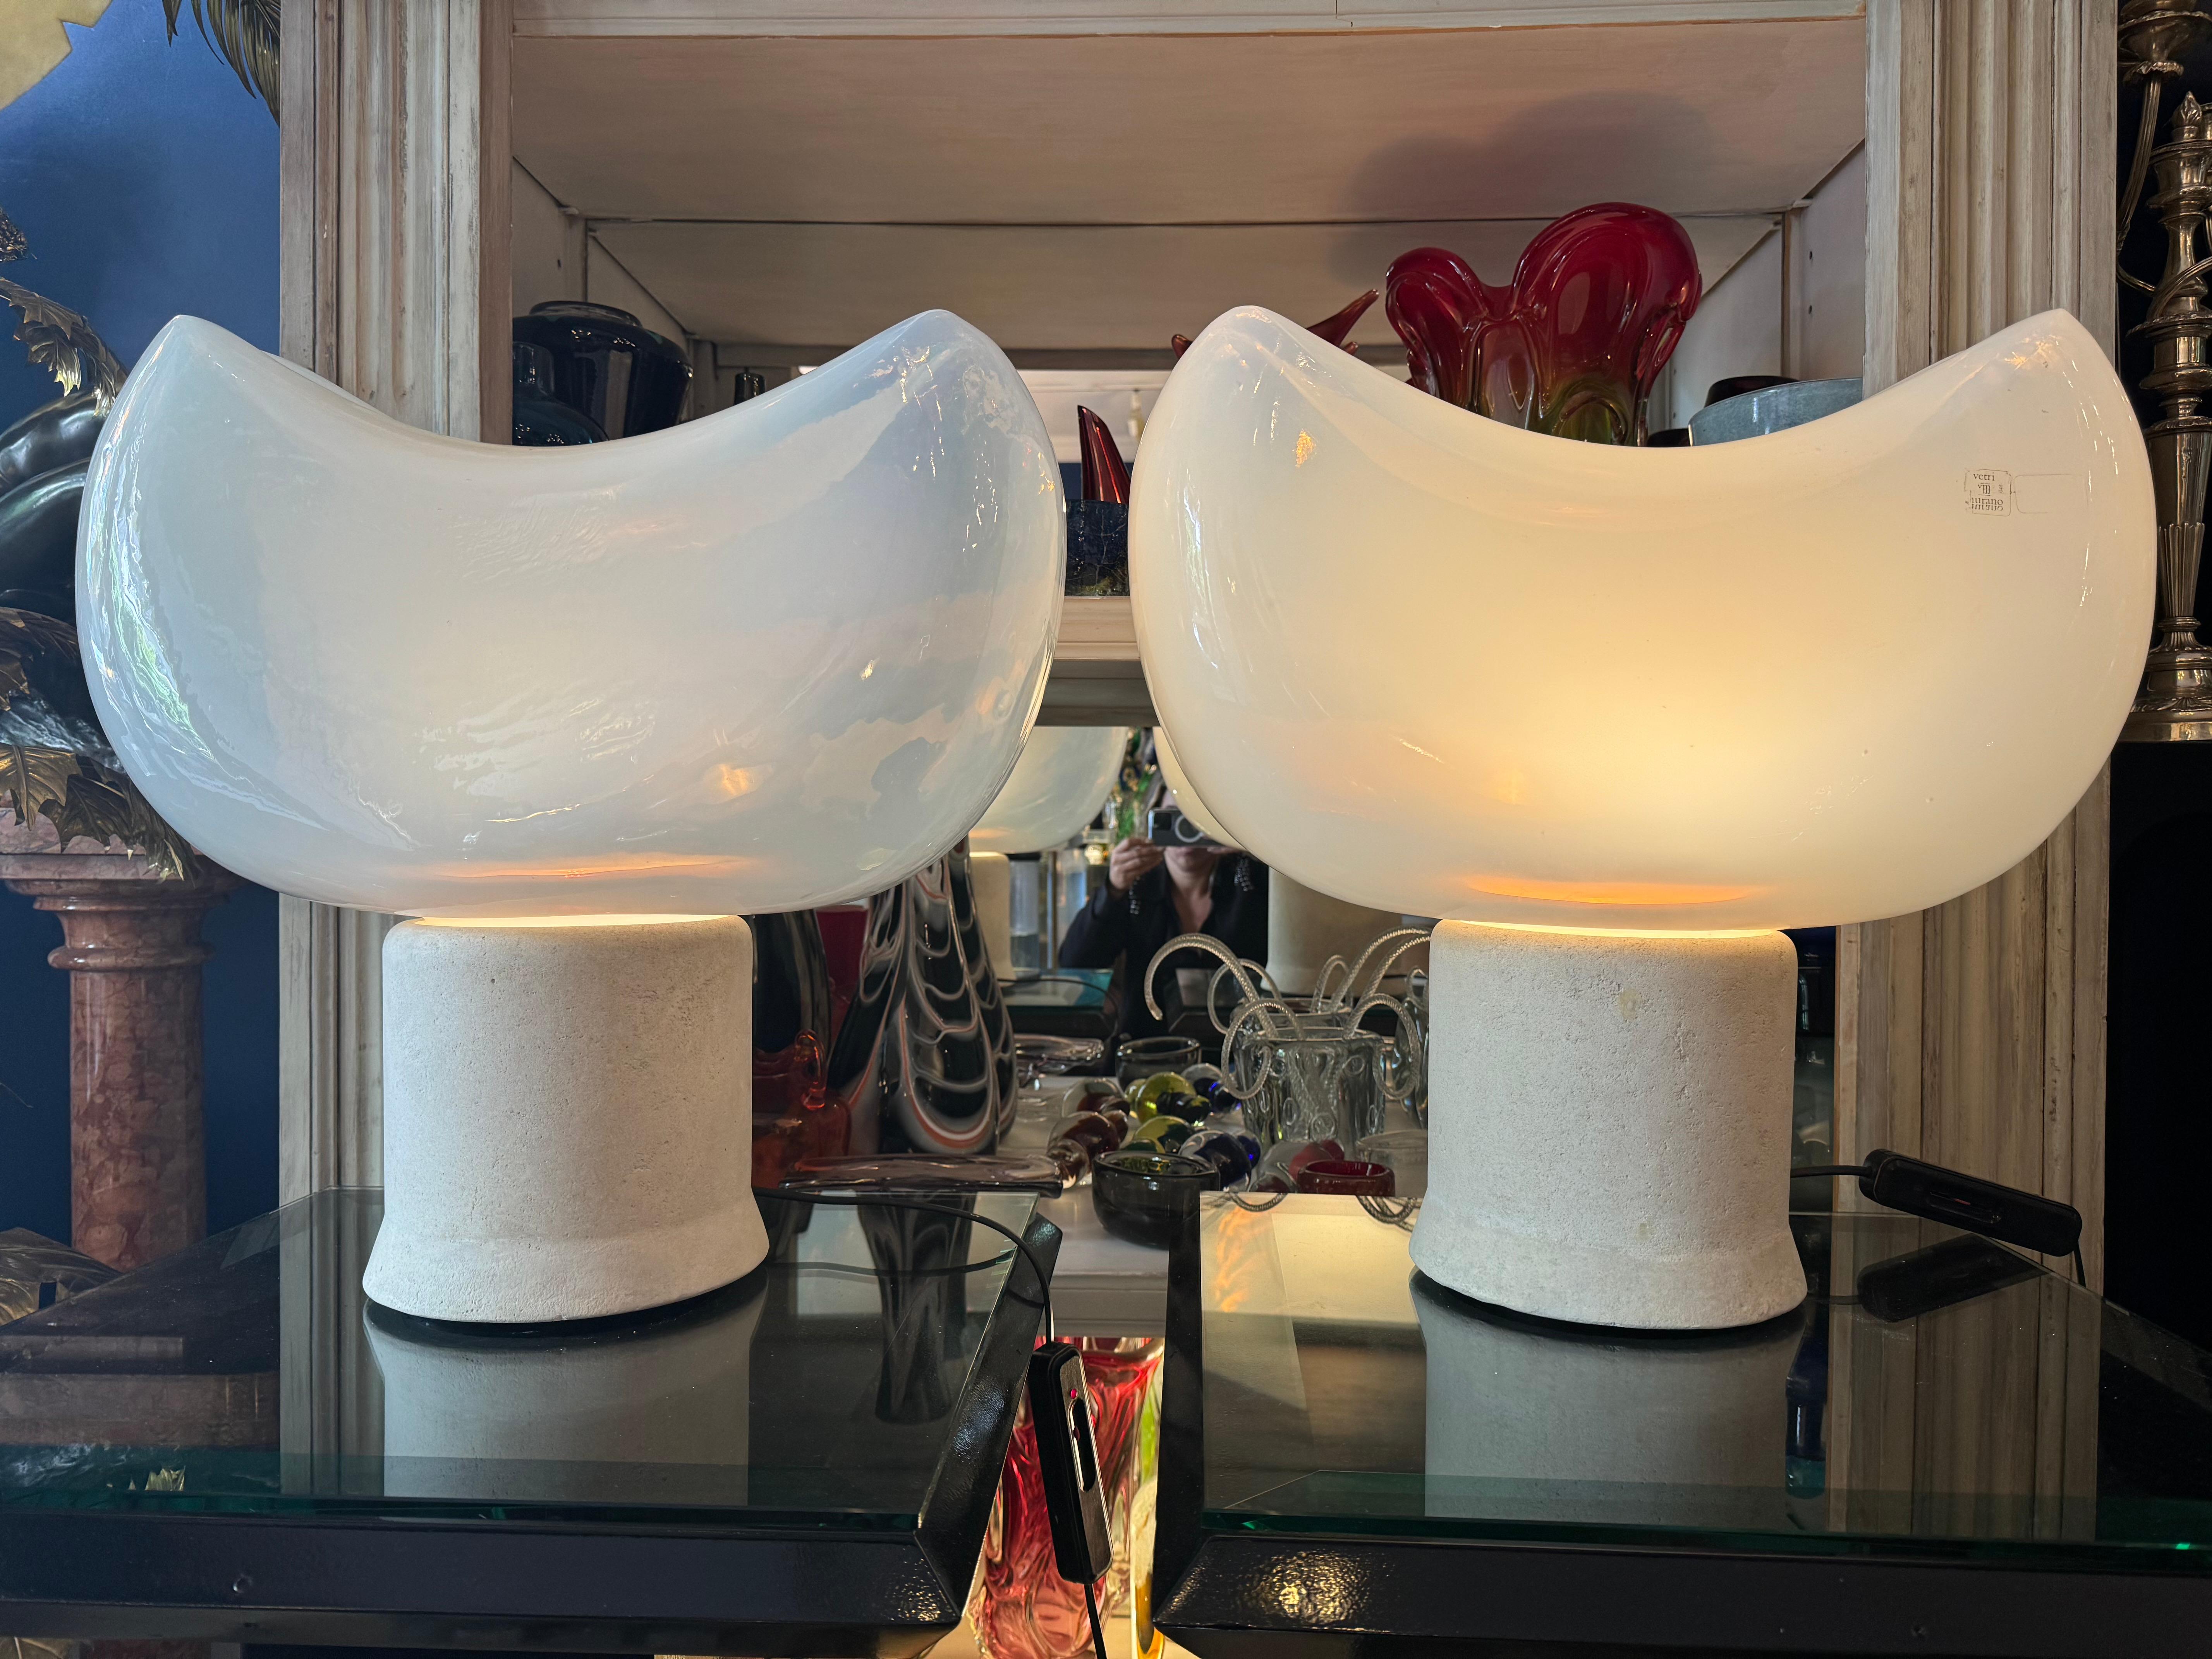 Entrez dans le monde du design italien du milieu du siècle avec la lampe Aghia, un véritable chef-d'œuvre réalisé par le célèbre designer Roberto Pamio en collaboration avec le prestigieux fabricant italien Leucos dans les années 1960.

Imaginez :